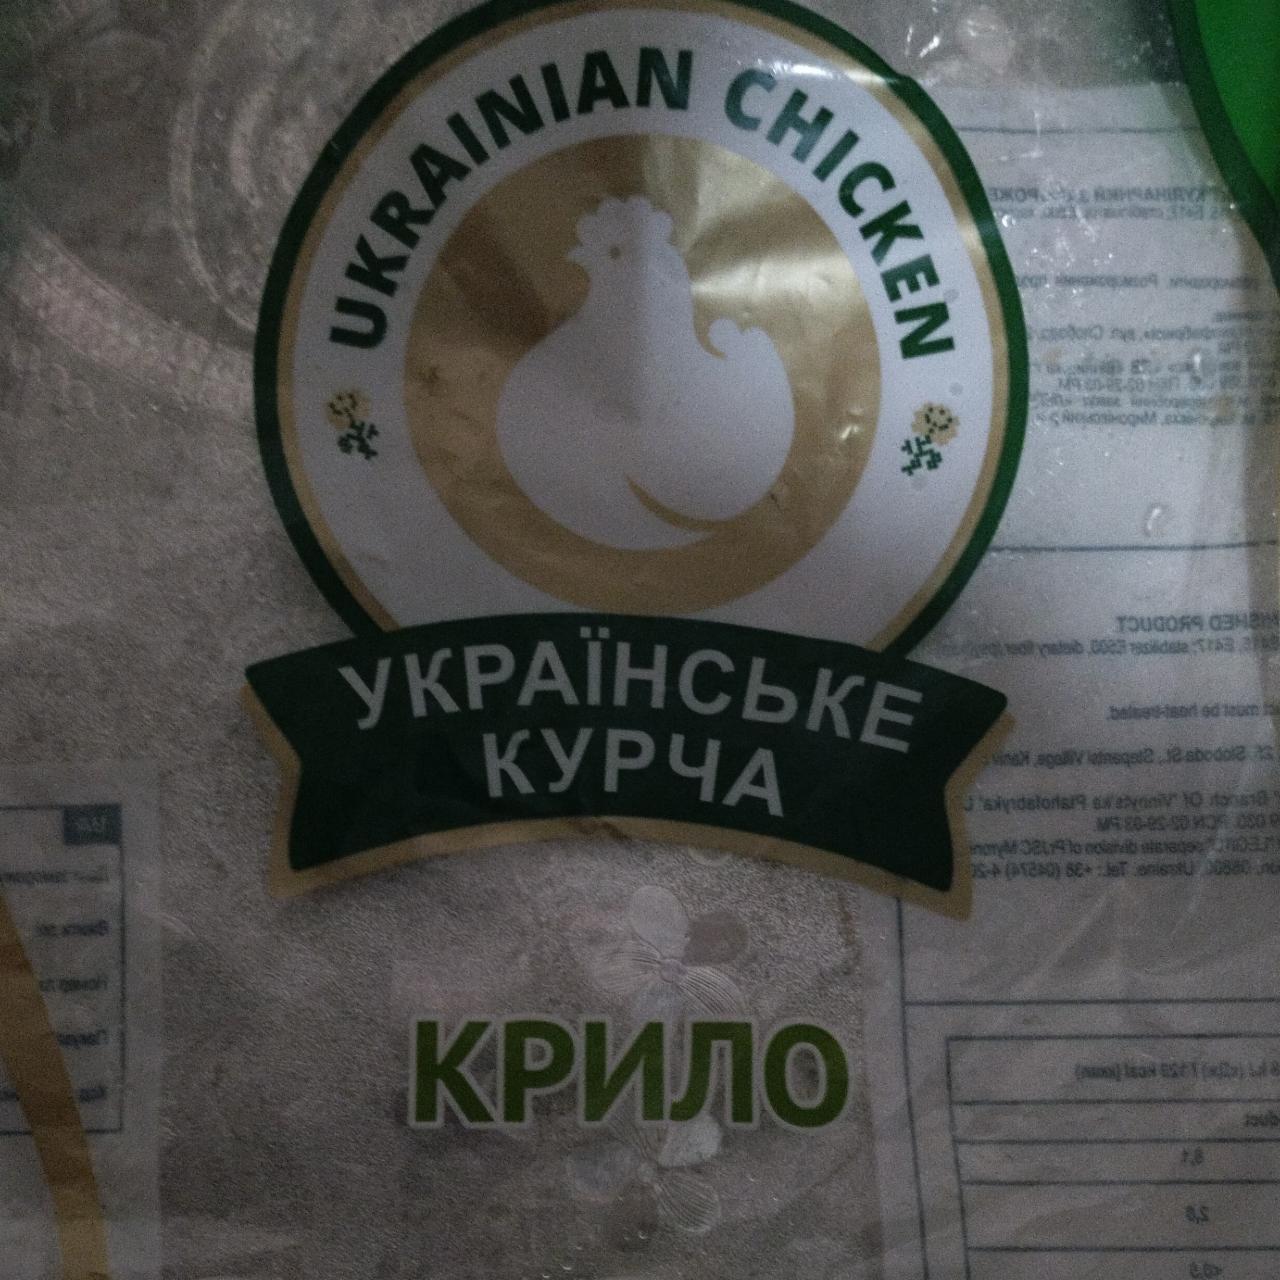 Фото - Крыло куриное Українське курча